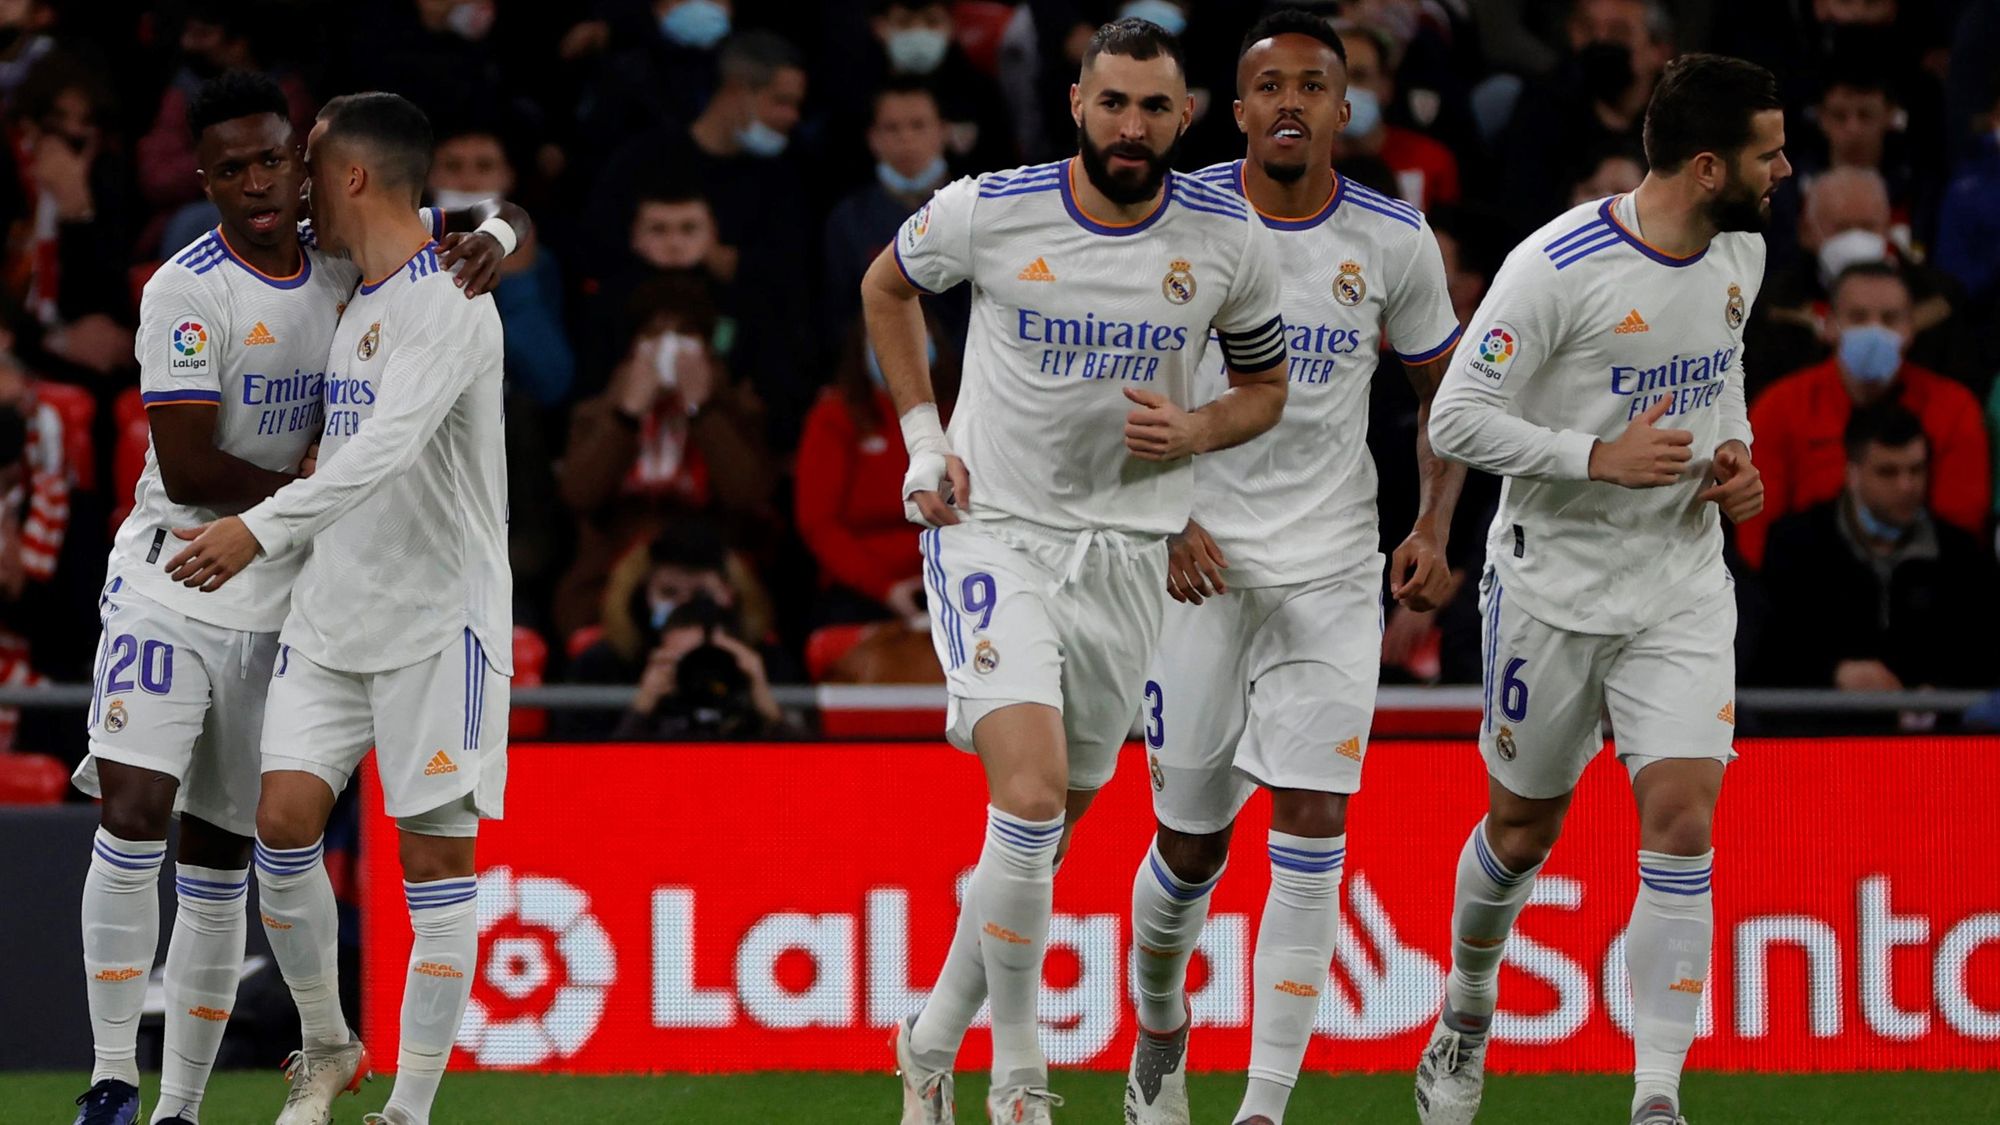 Real Madrid - La Liga - 45 goles a favor 